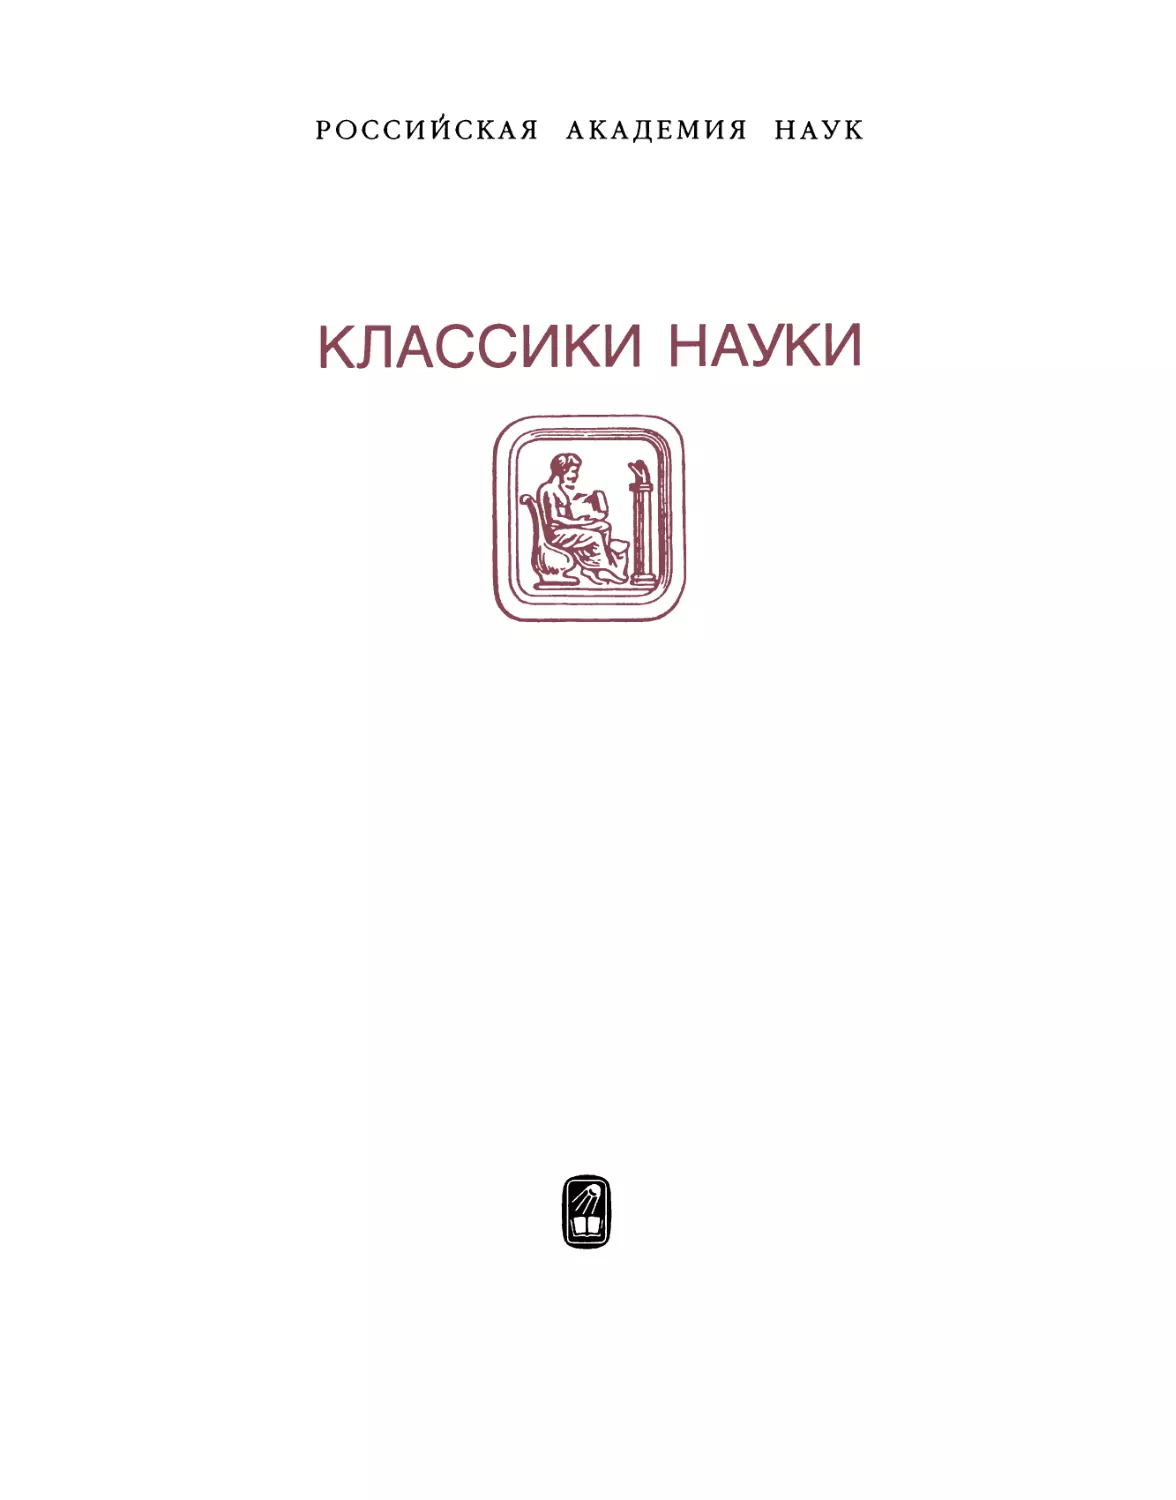 Марков М.А. Избранные труды. Т.1 - 2000